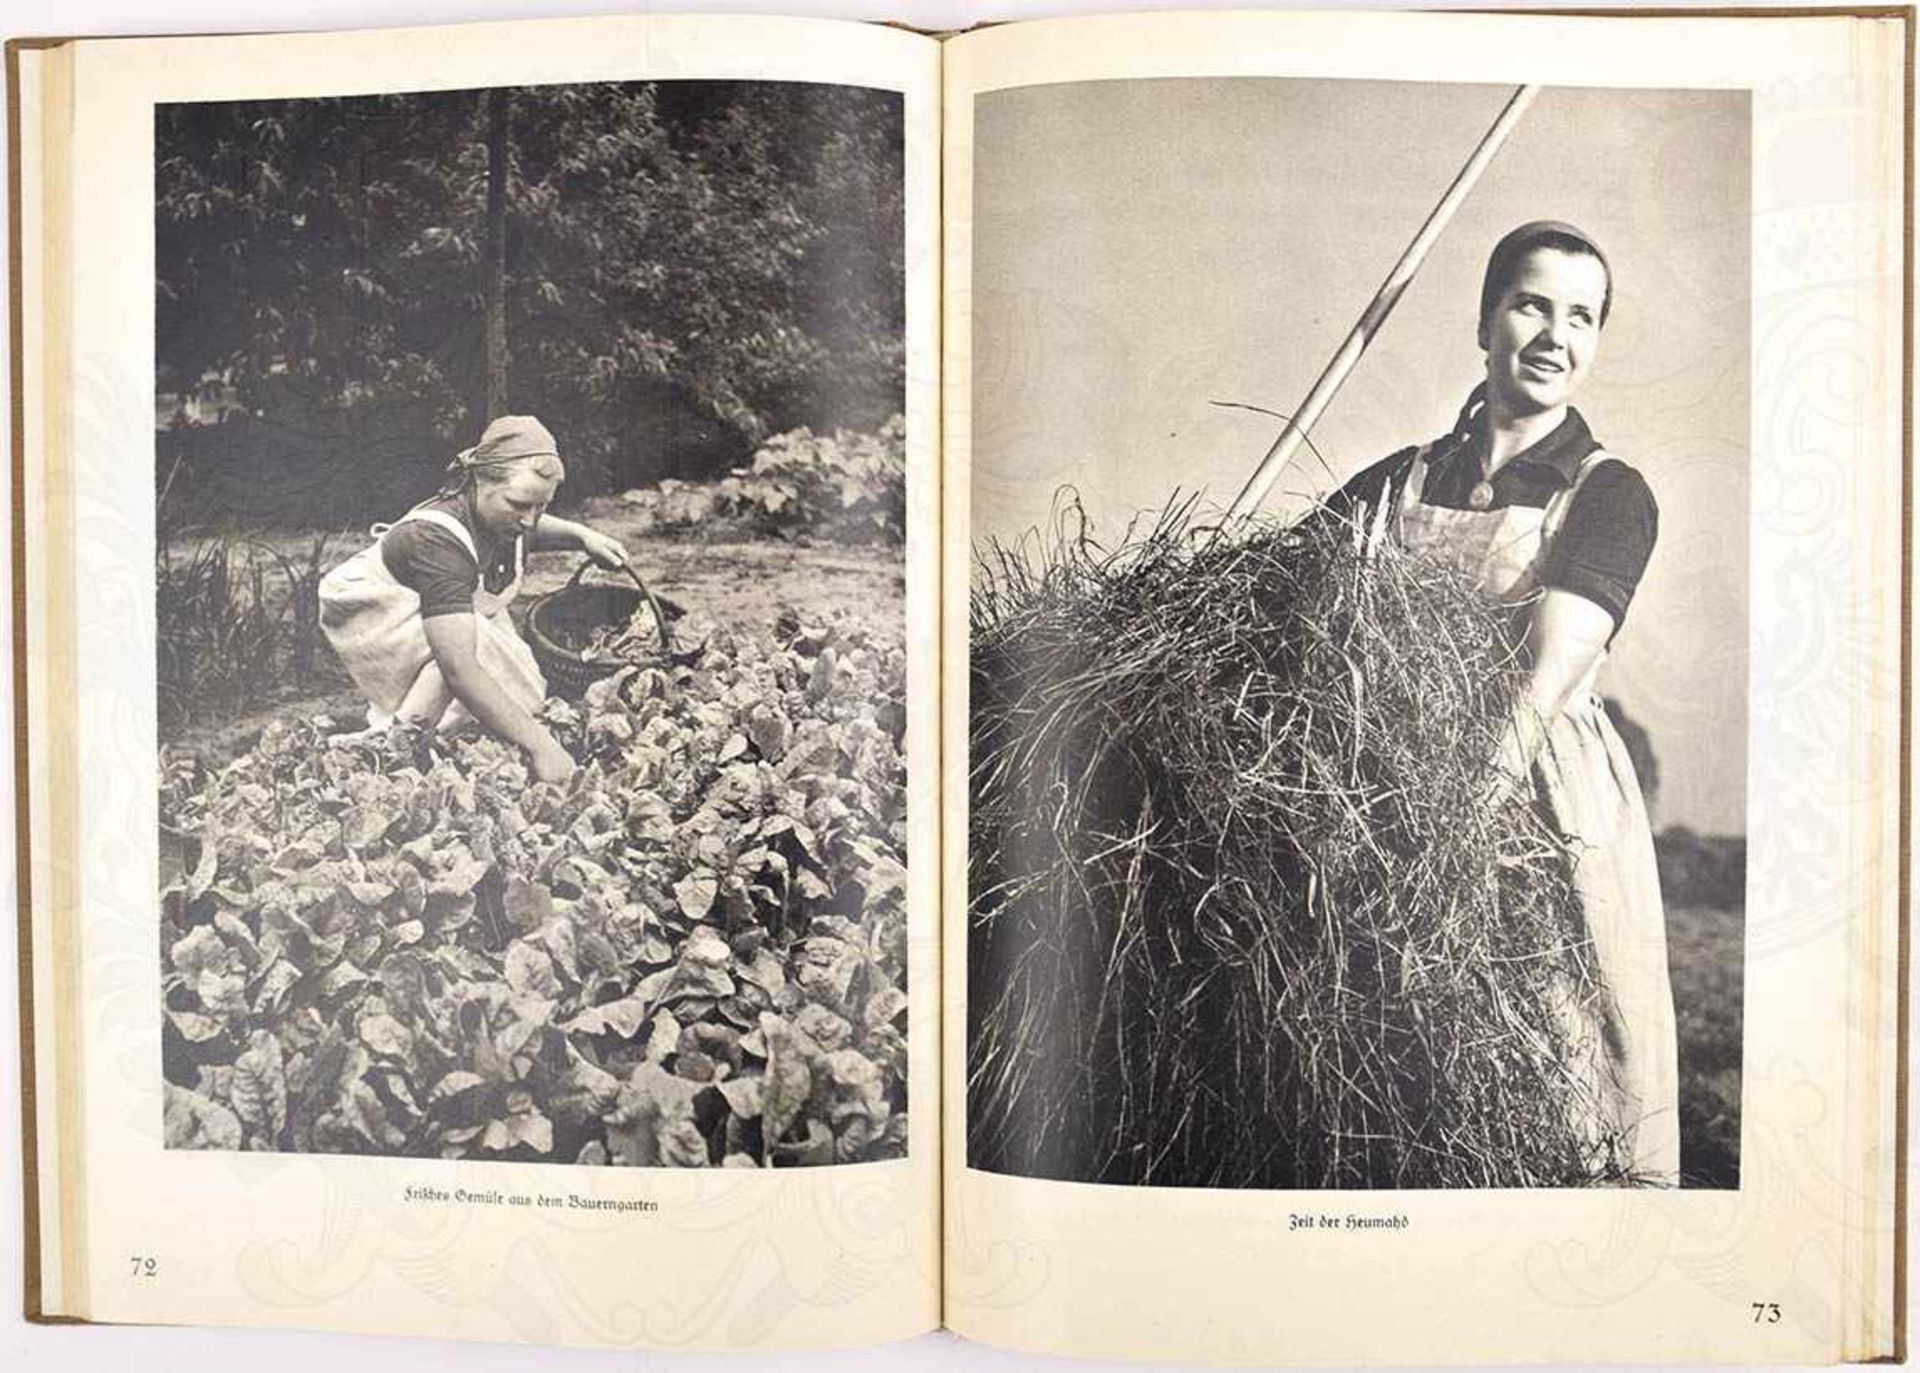 ARBEITSMAIDEN AM WERK, H. Retzlaff, Fotoband, Lpz. 1940, 136 S., gld.gepr. Ln. - Bild 2 aus 2